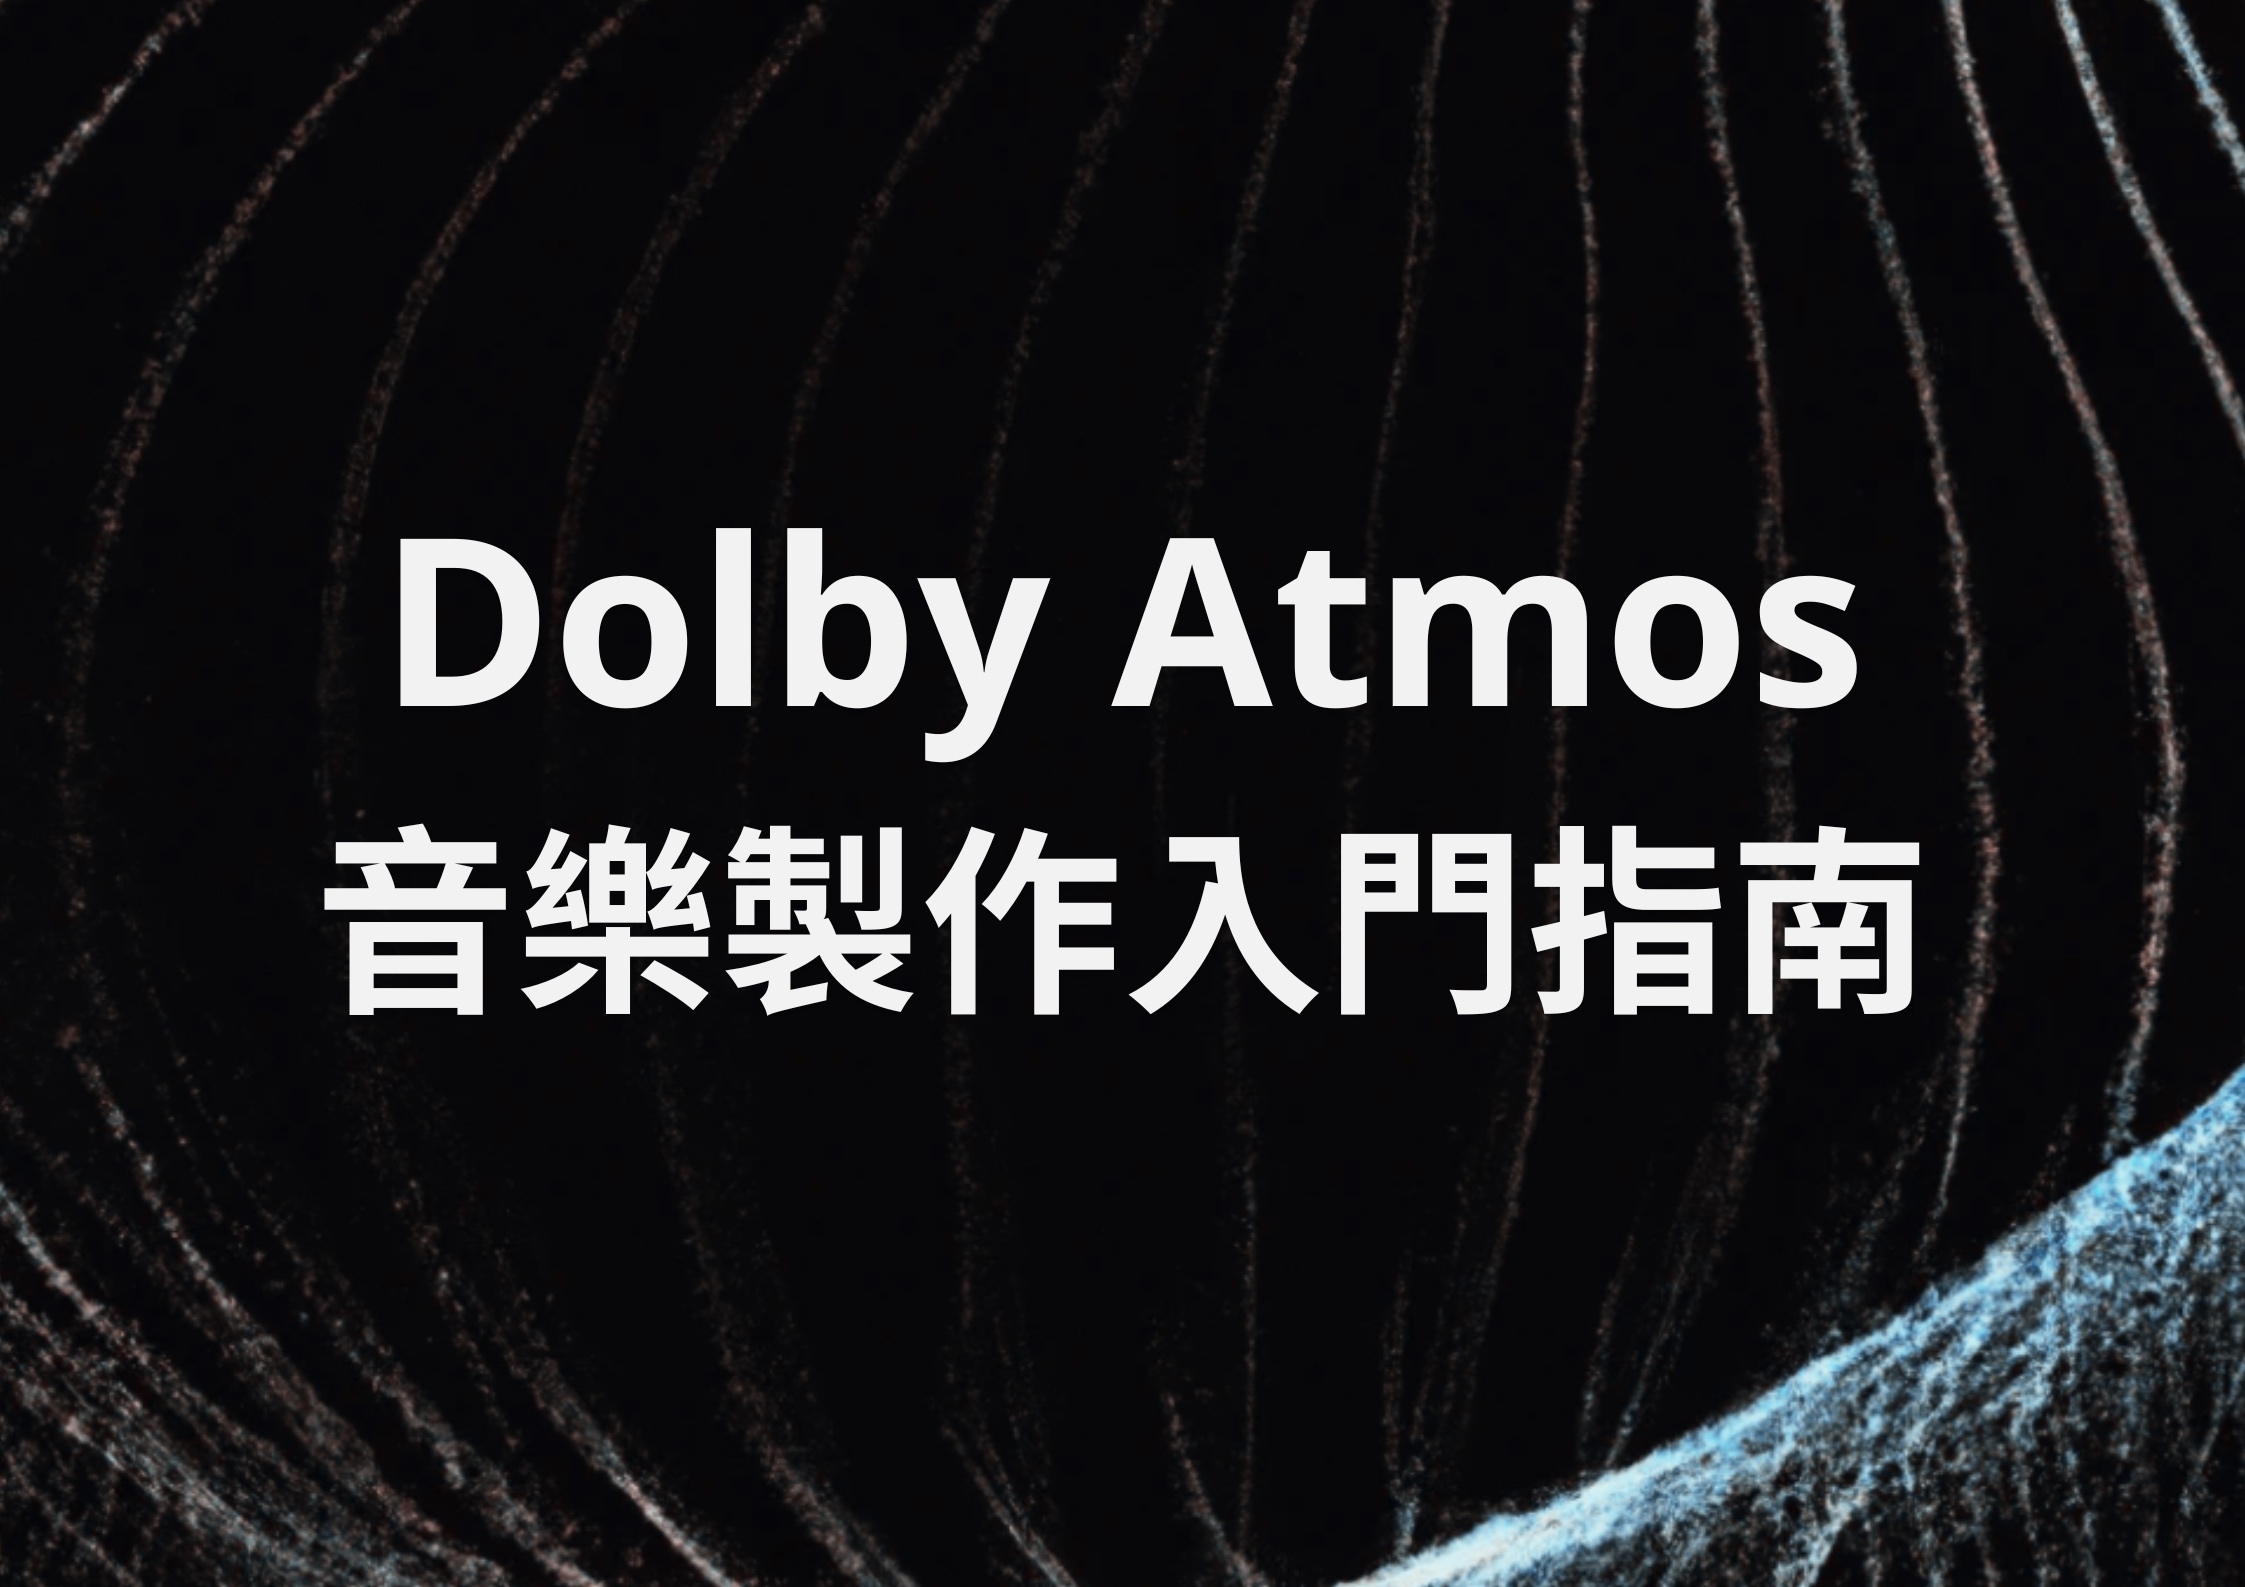 Dolby atmos %e9%9f%b3%e6%a8%82%e8%a3%bd%e4%bd%9c%e5%85%a5%e9%96%80%e6%8c%87%e5%8d%97